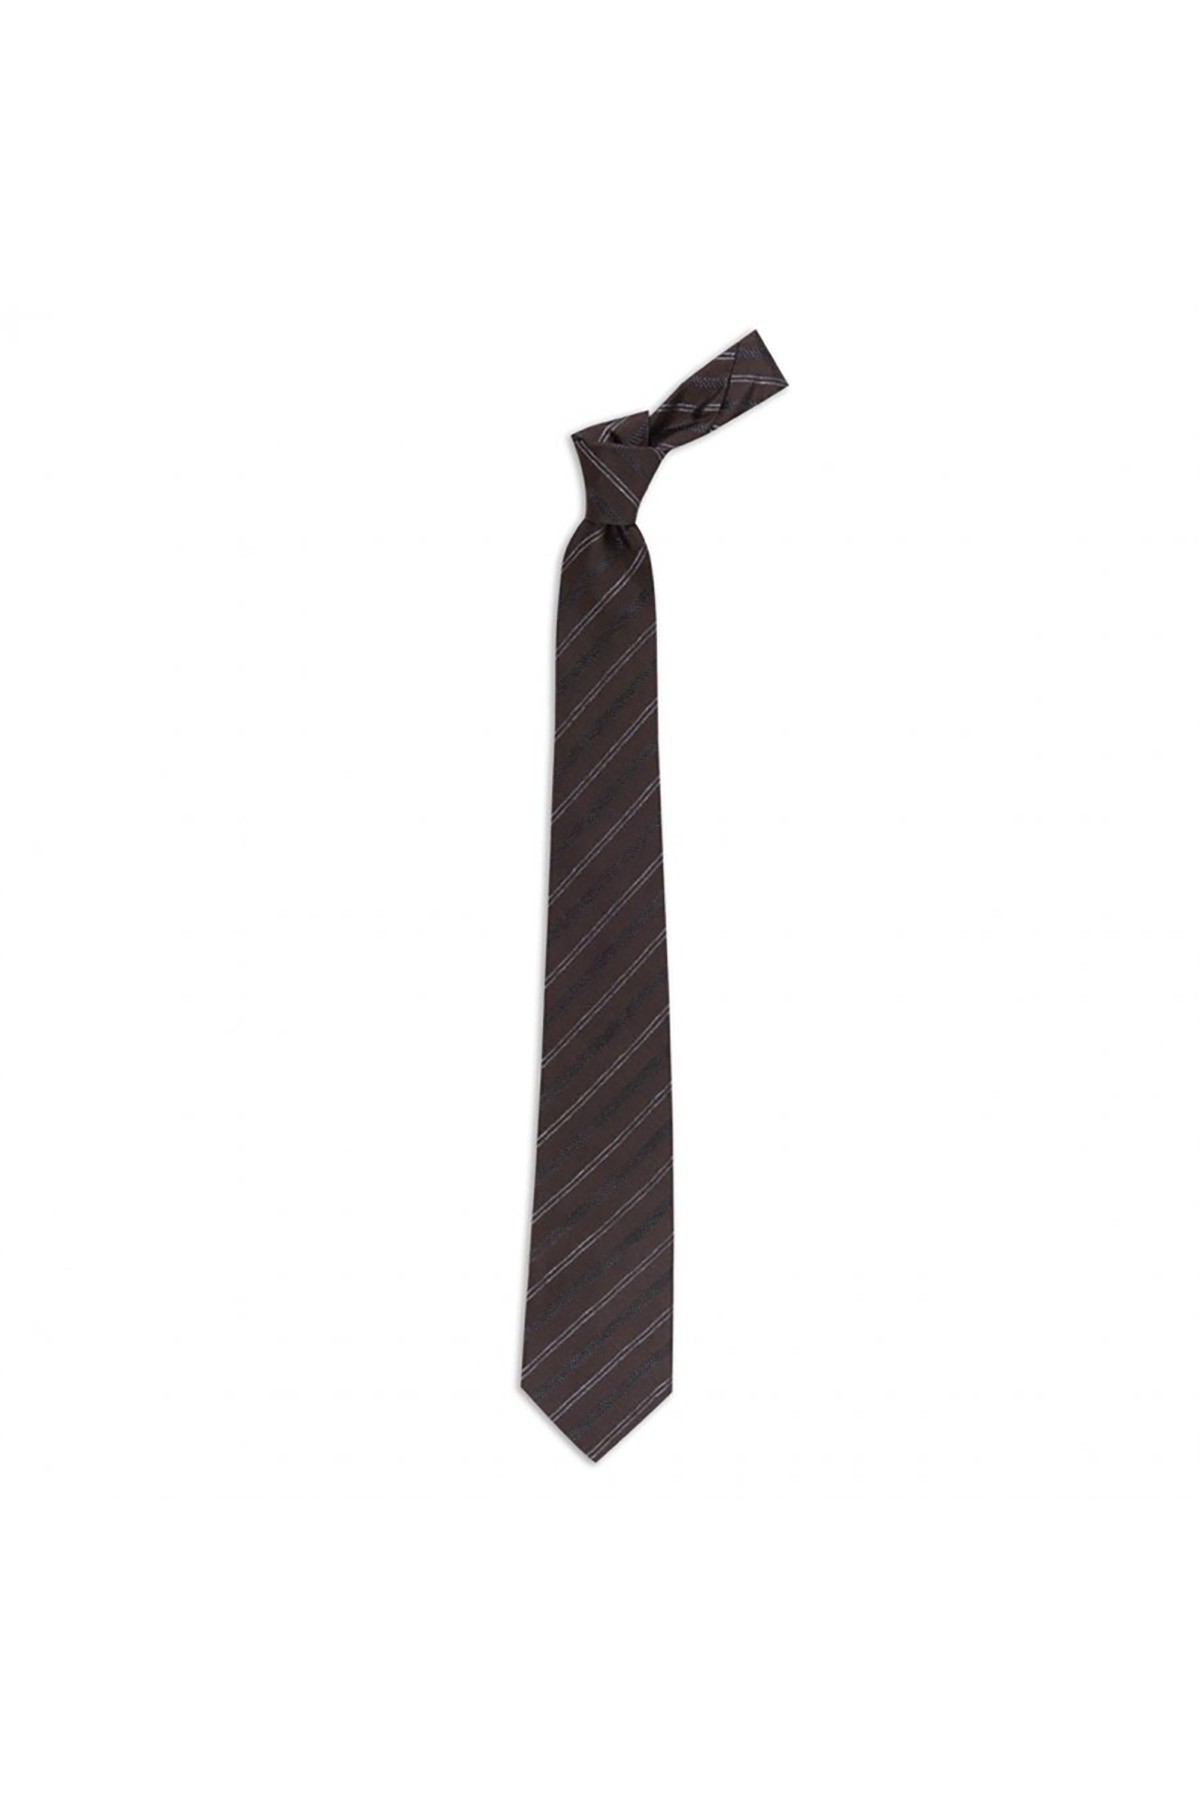 Desenli 8 cm genişliğinde yün ipek karışımlı kravat - Kahverengi